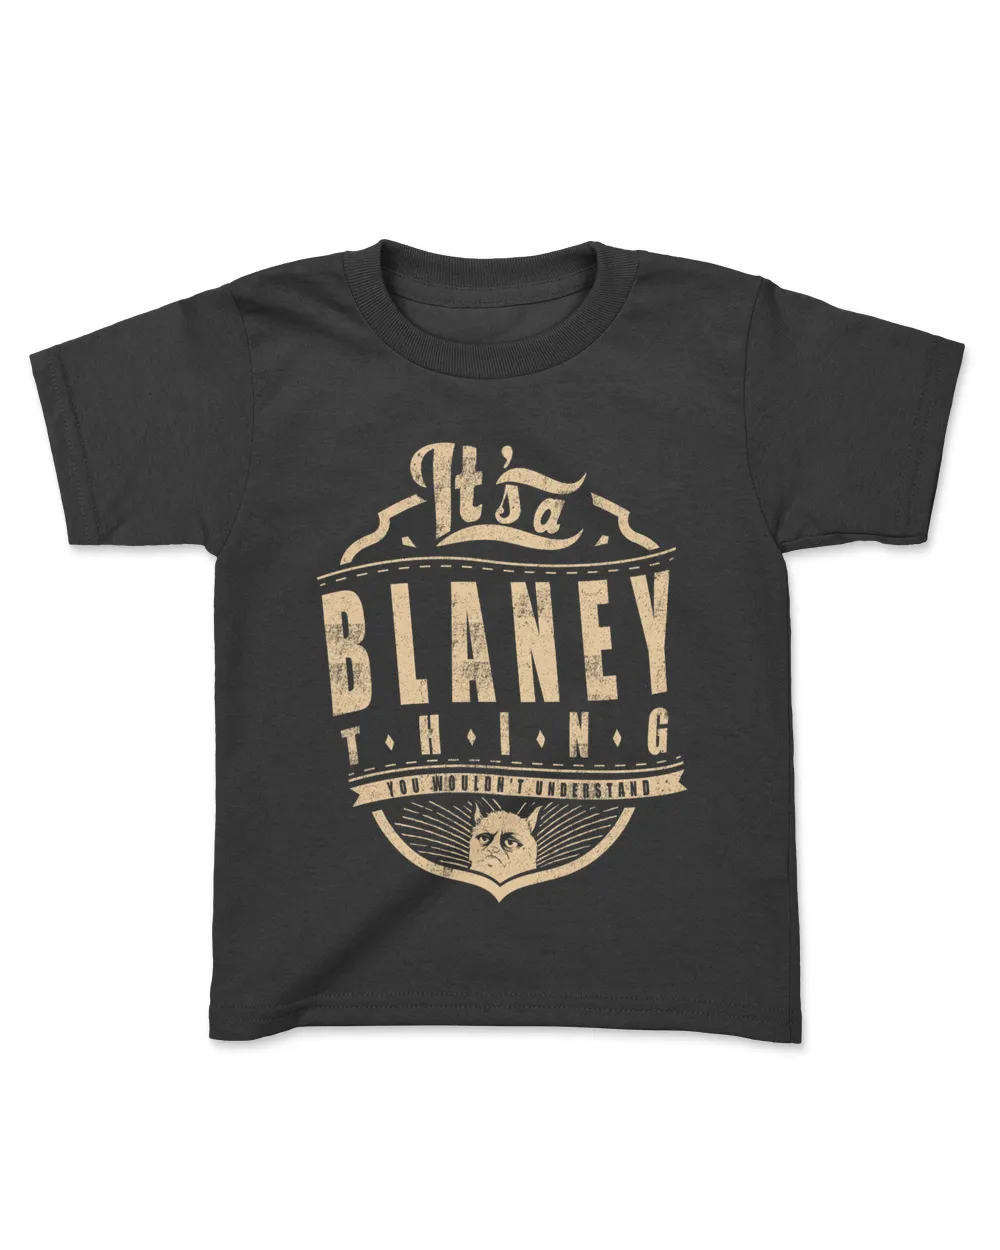 BLANEY THINGS D4